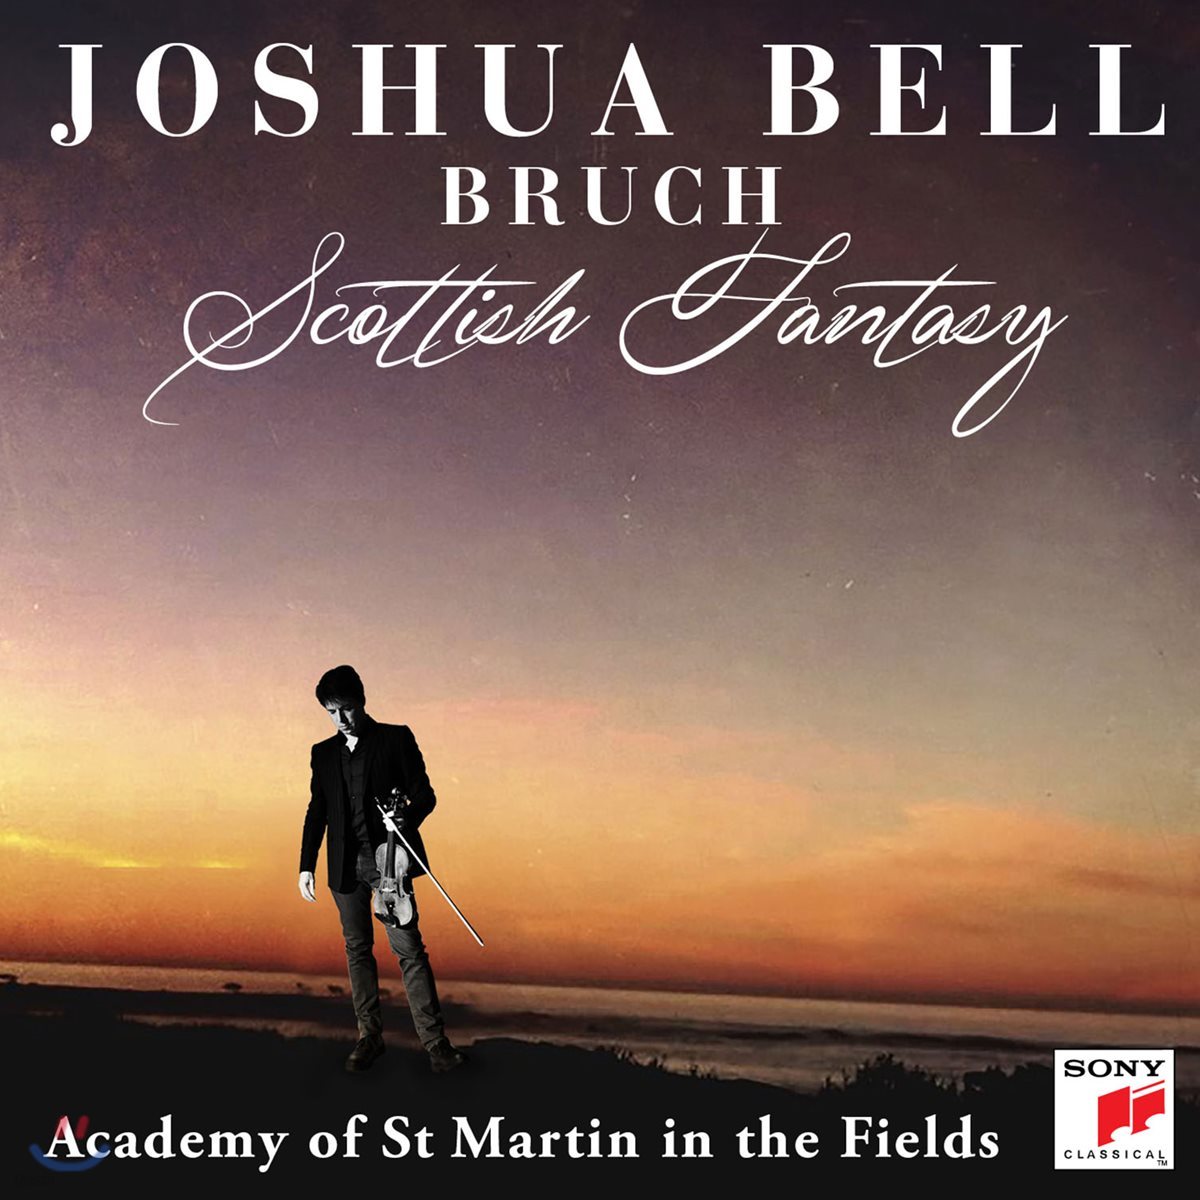 Joshua Bell 브루흐: 스코틀랜드 환상곡, 바이올린 협주곡 - 조슈아 벨,  아카데미 오브 세인트 마틴 인 더 필즈